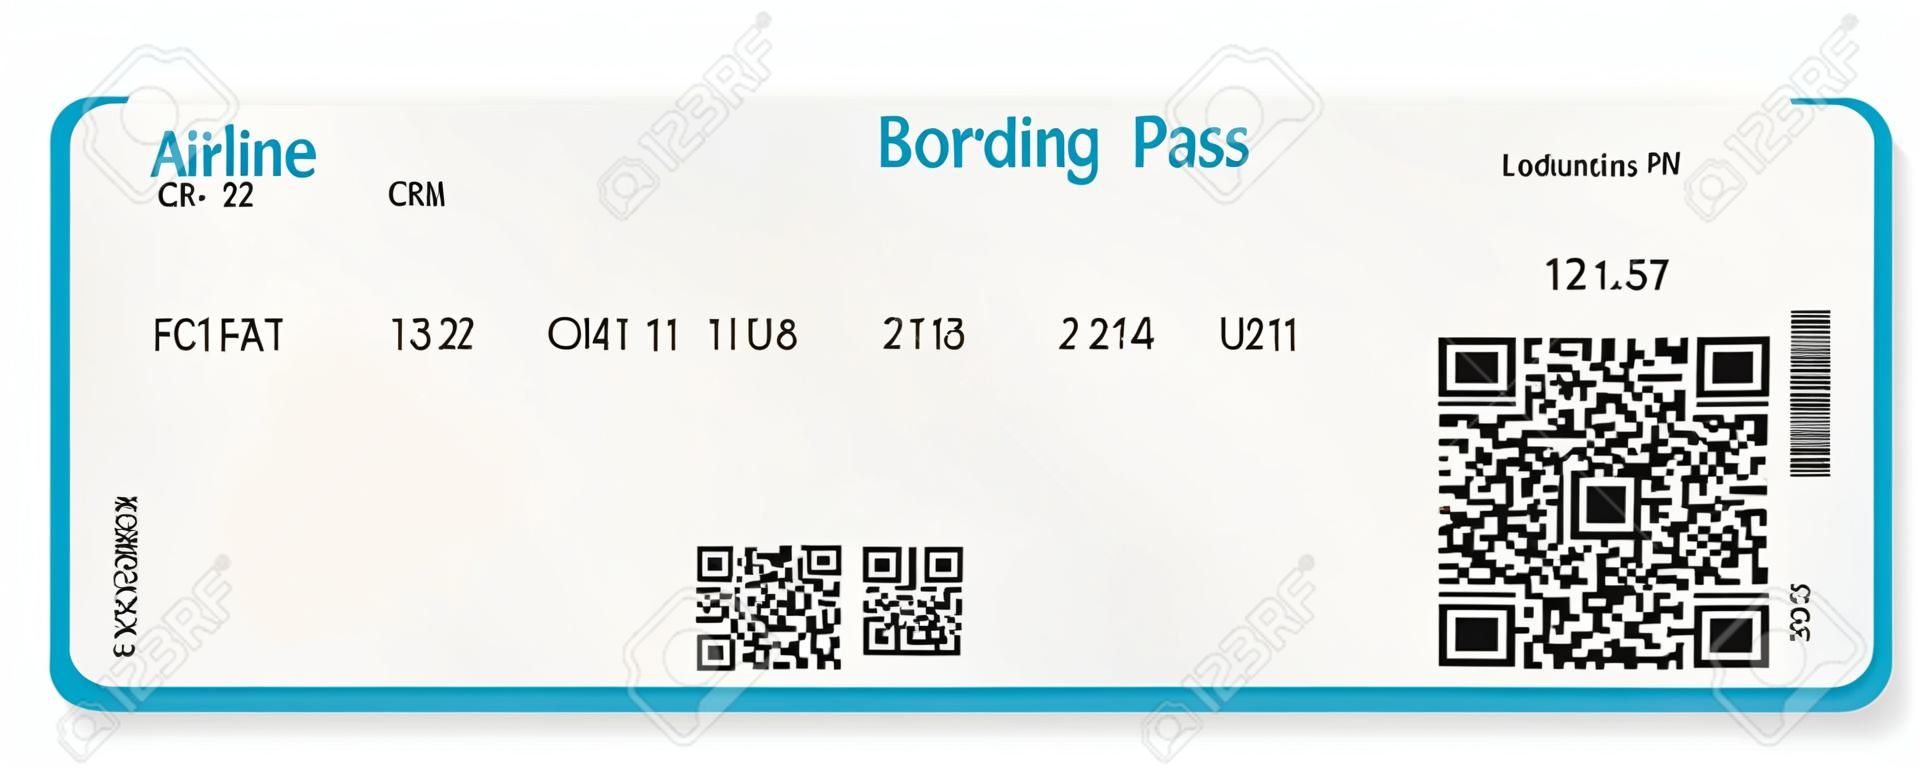 矢量图像的航空公司登机机票QR2代码白色隔离矢量插画